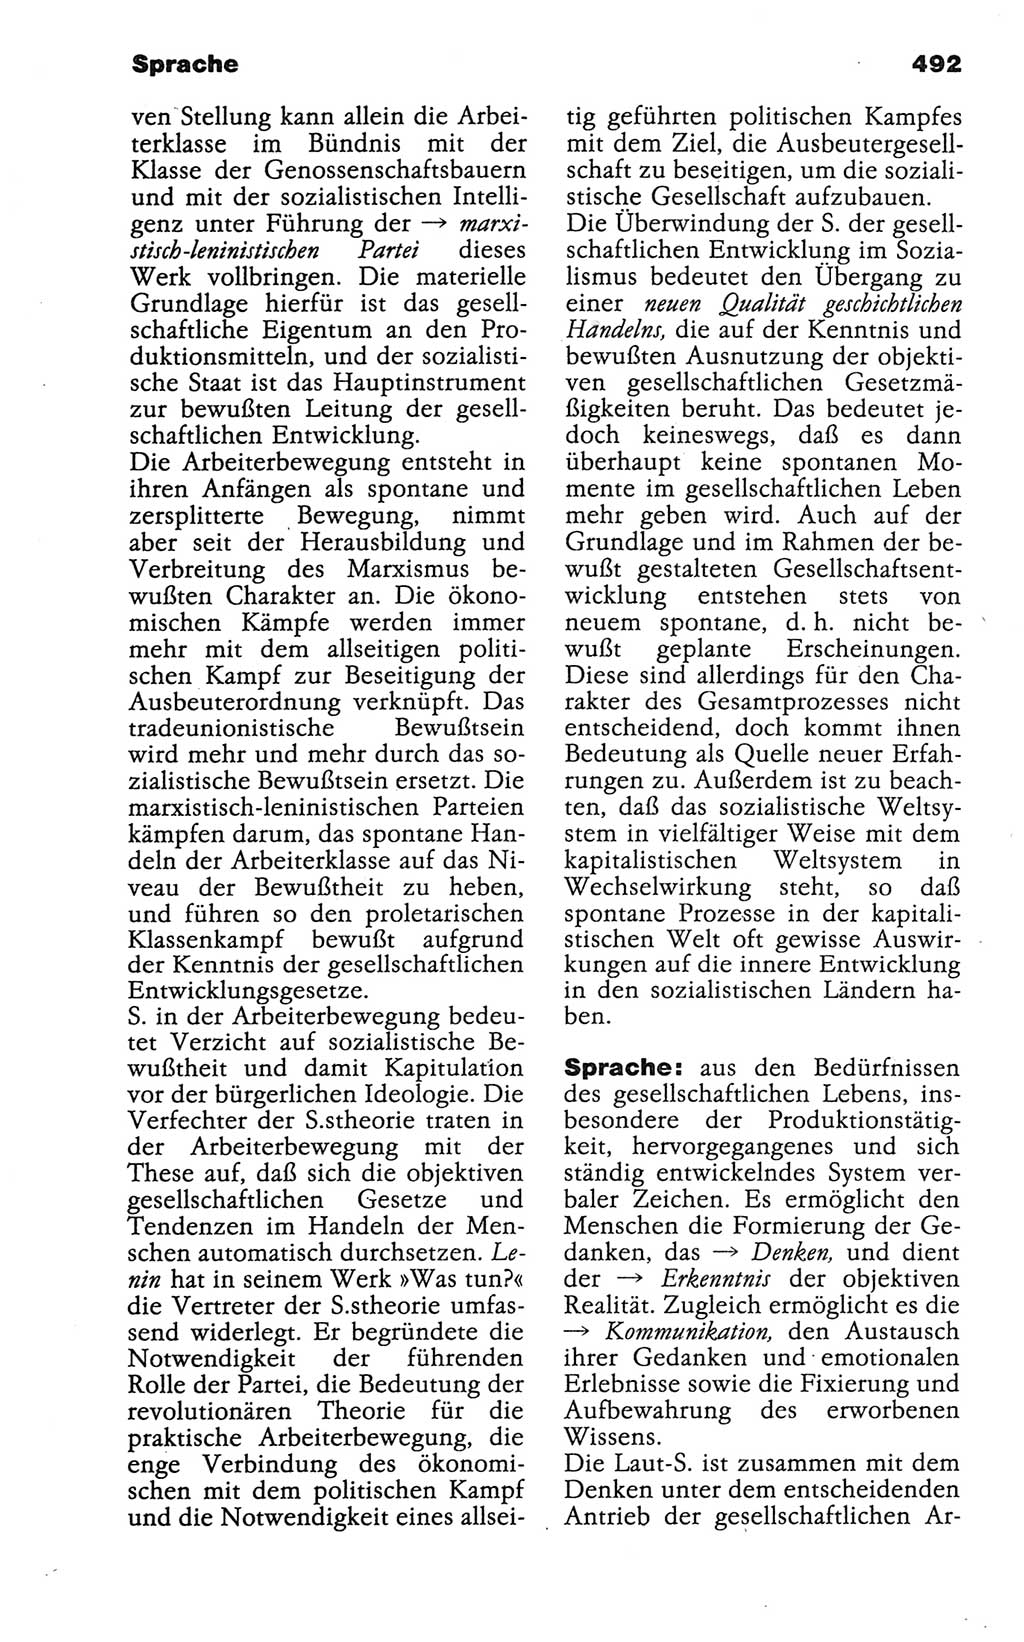 Wörterbuch der marxistisch-leninistischen Philosophie [Deutsche Demokratische Republik (DDR)] 1986, Seite 492 (Wb. ML Phil. DDR 1986, S. 492)